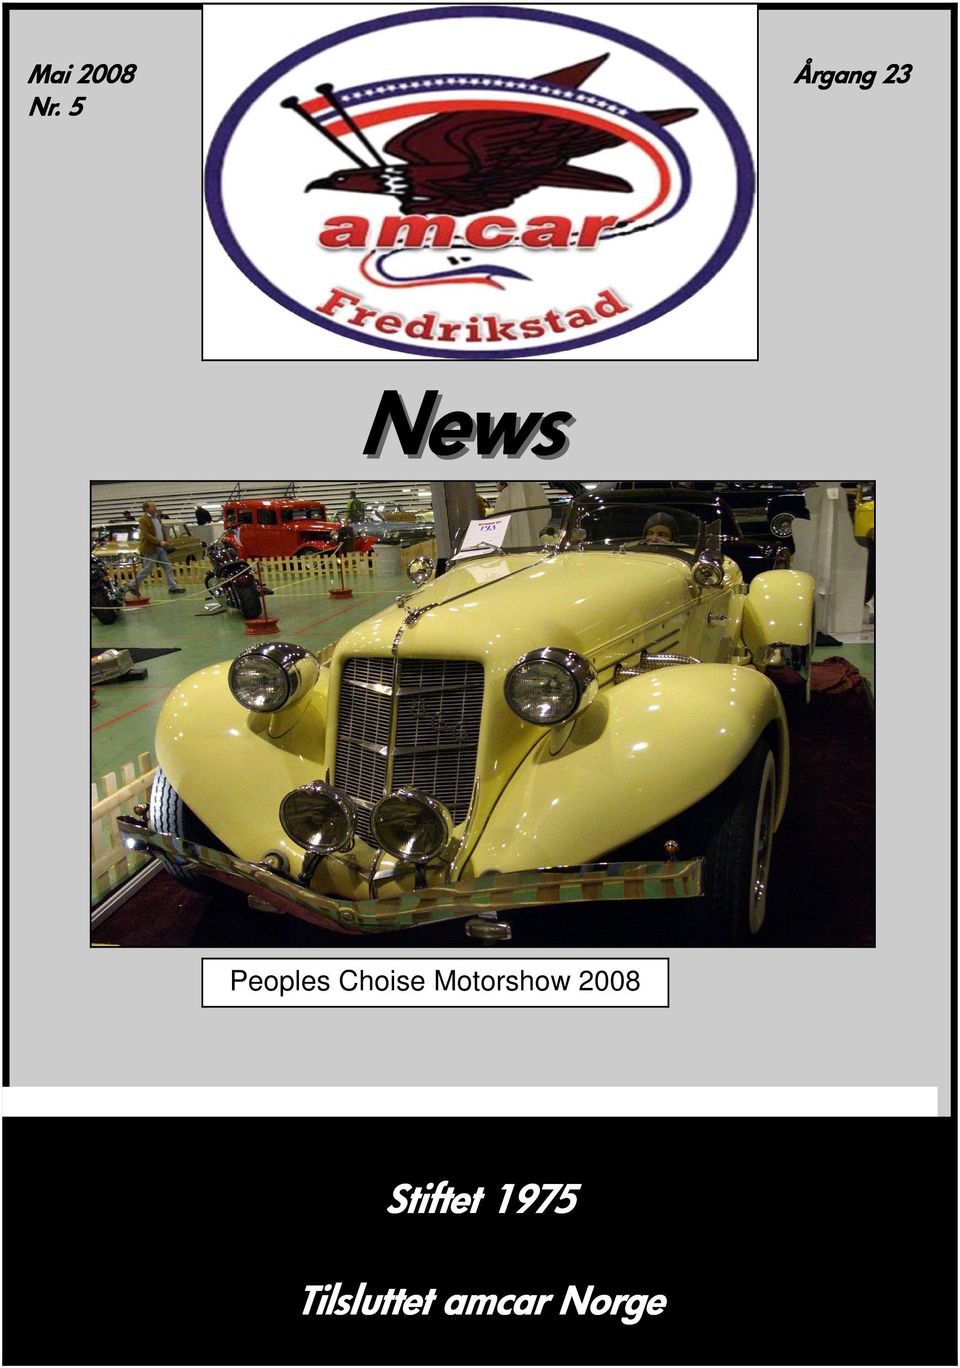 Choise Motorshow 2008